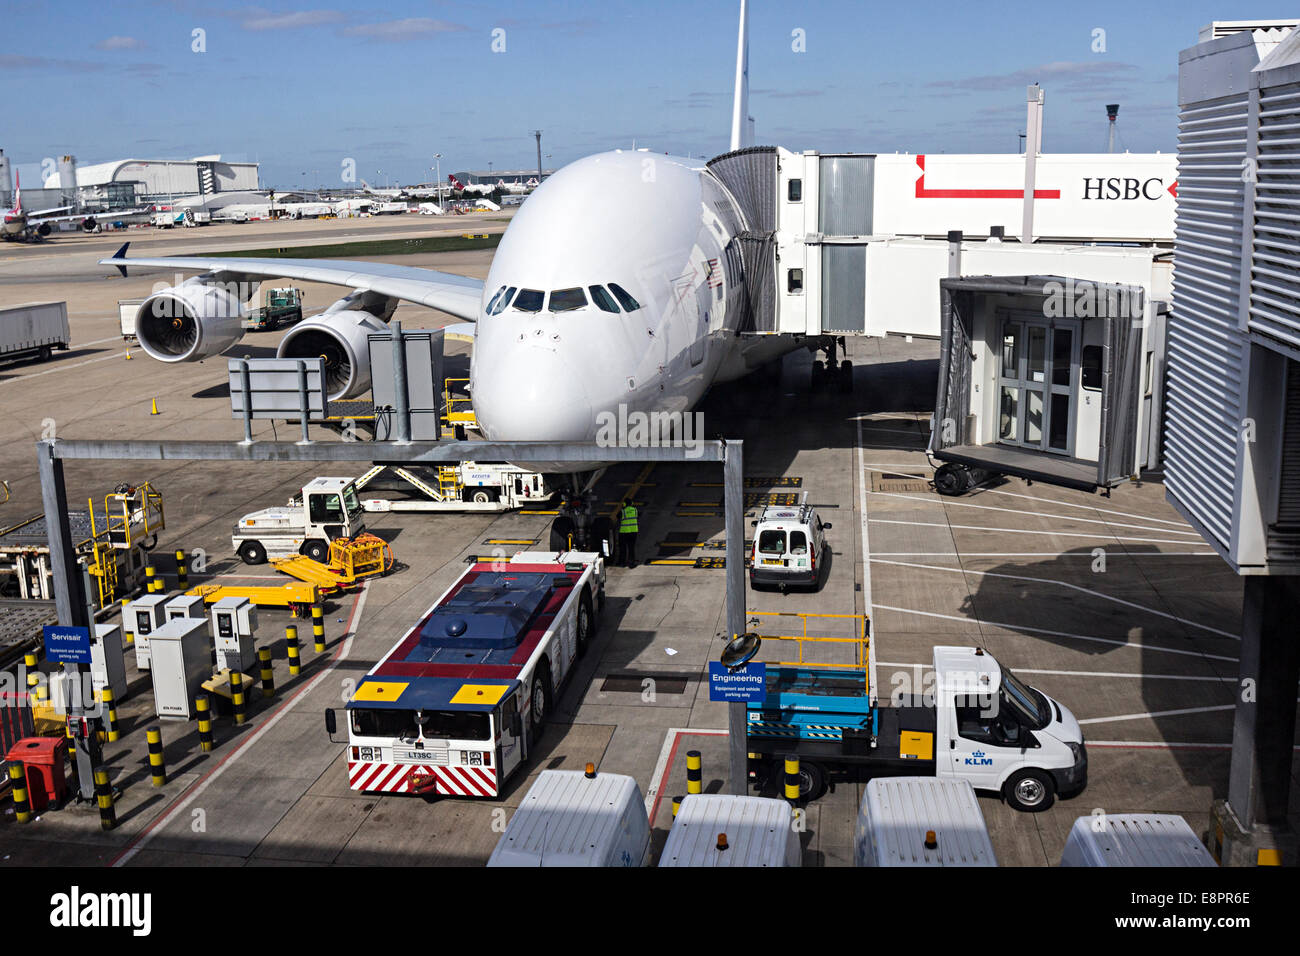 Aircraft at terminal waiting departure, Heathrow airport, London, UK Stock Photo